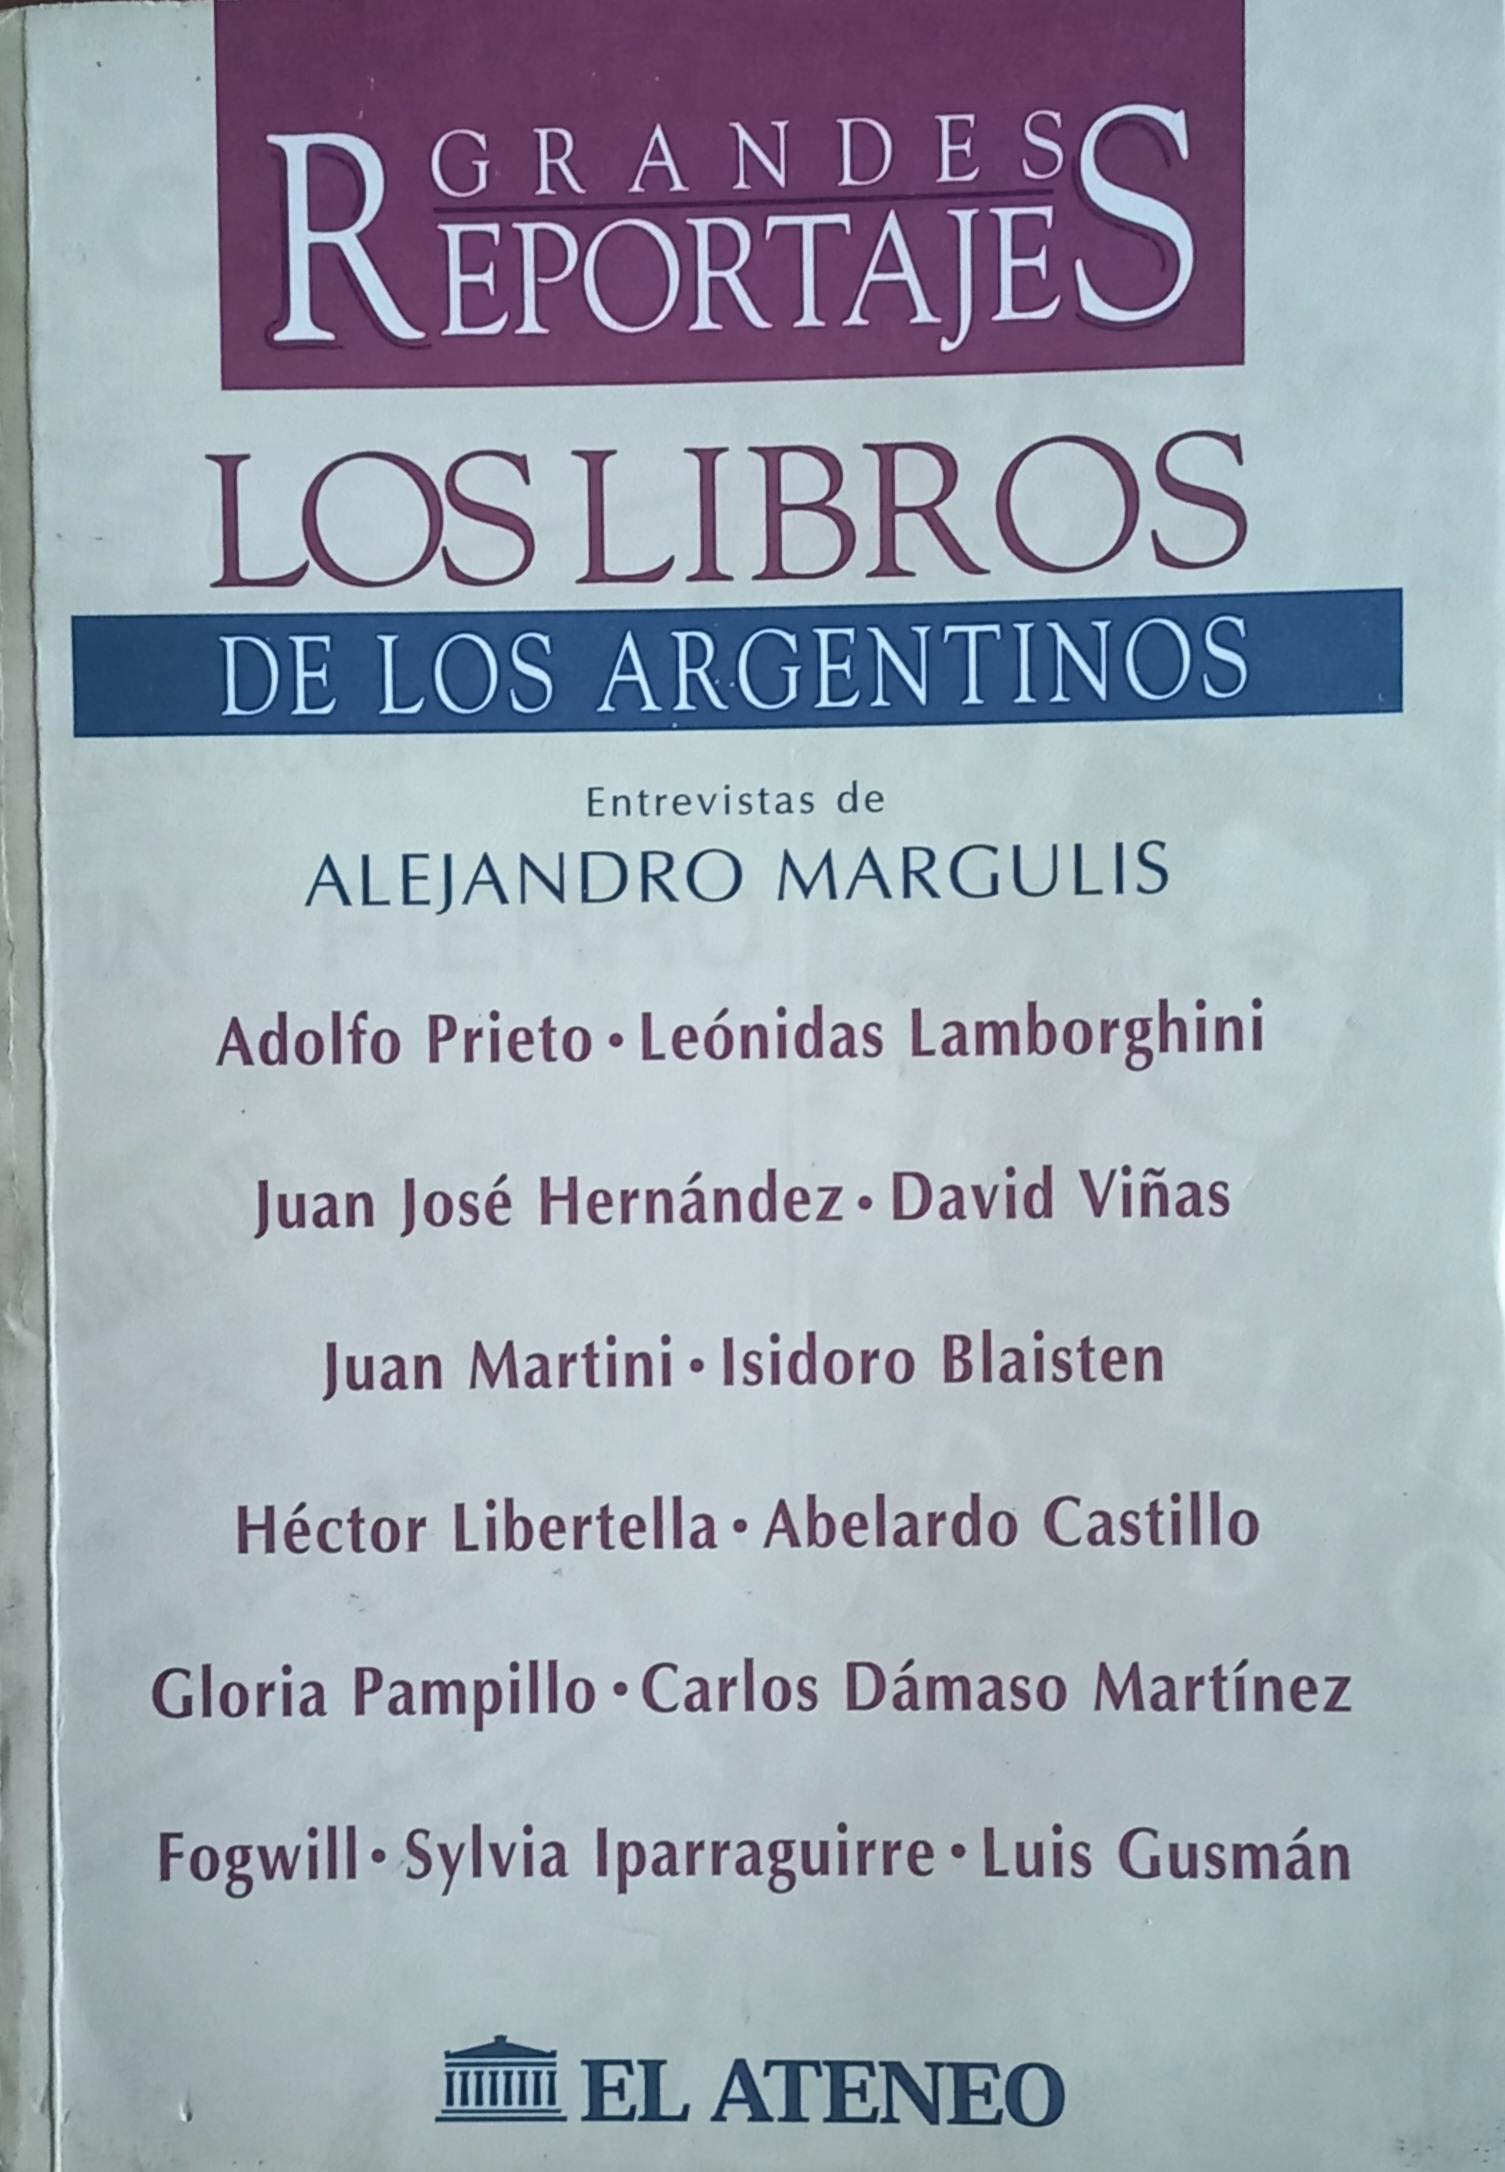 Los libros de los argentinos. Por Alejandro Margulis. 1997